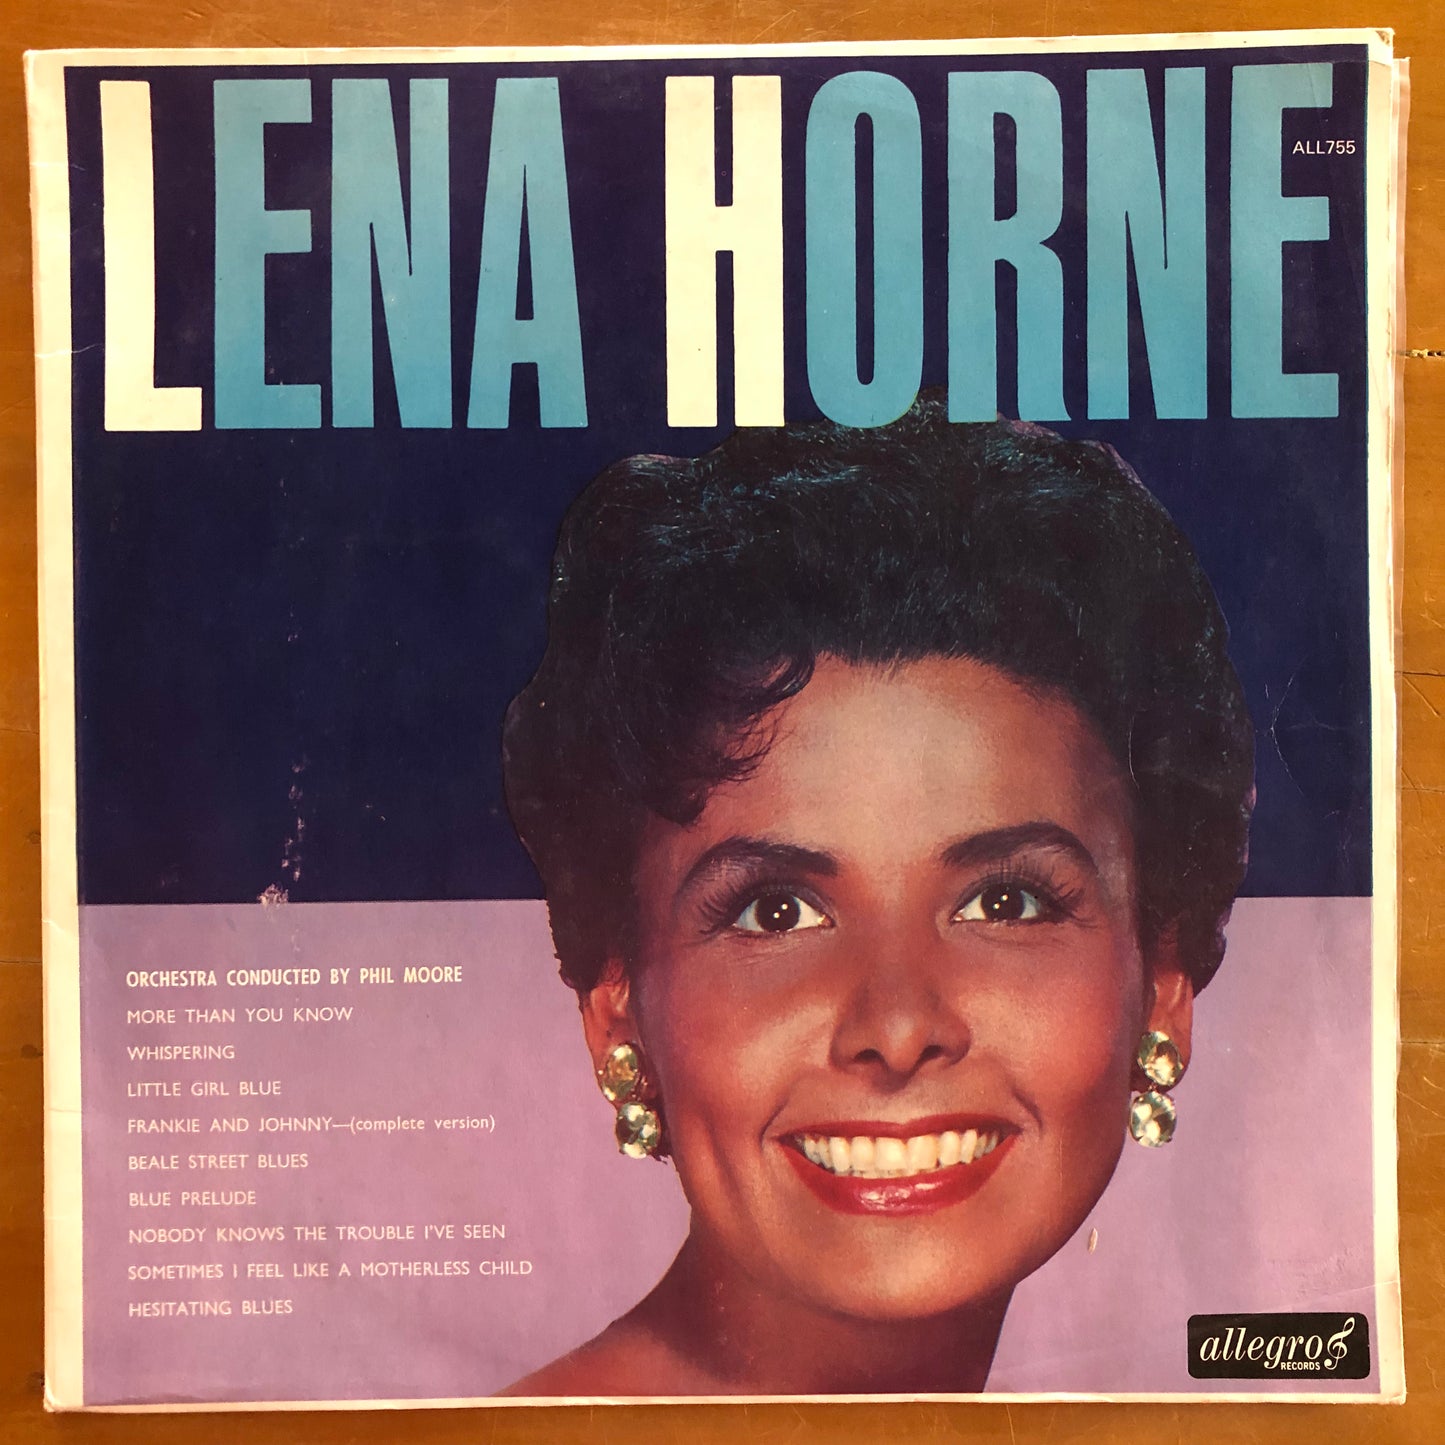 Lena Horne - Lena Horne